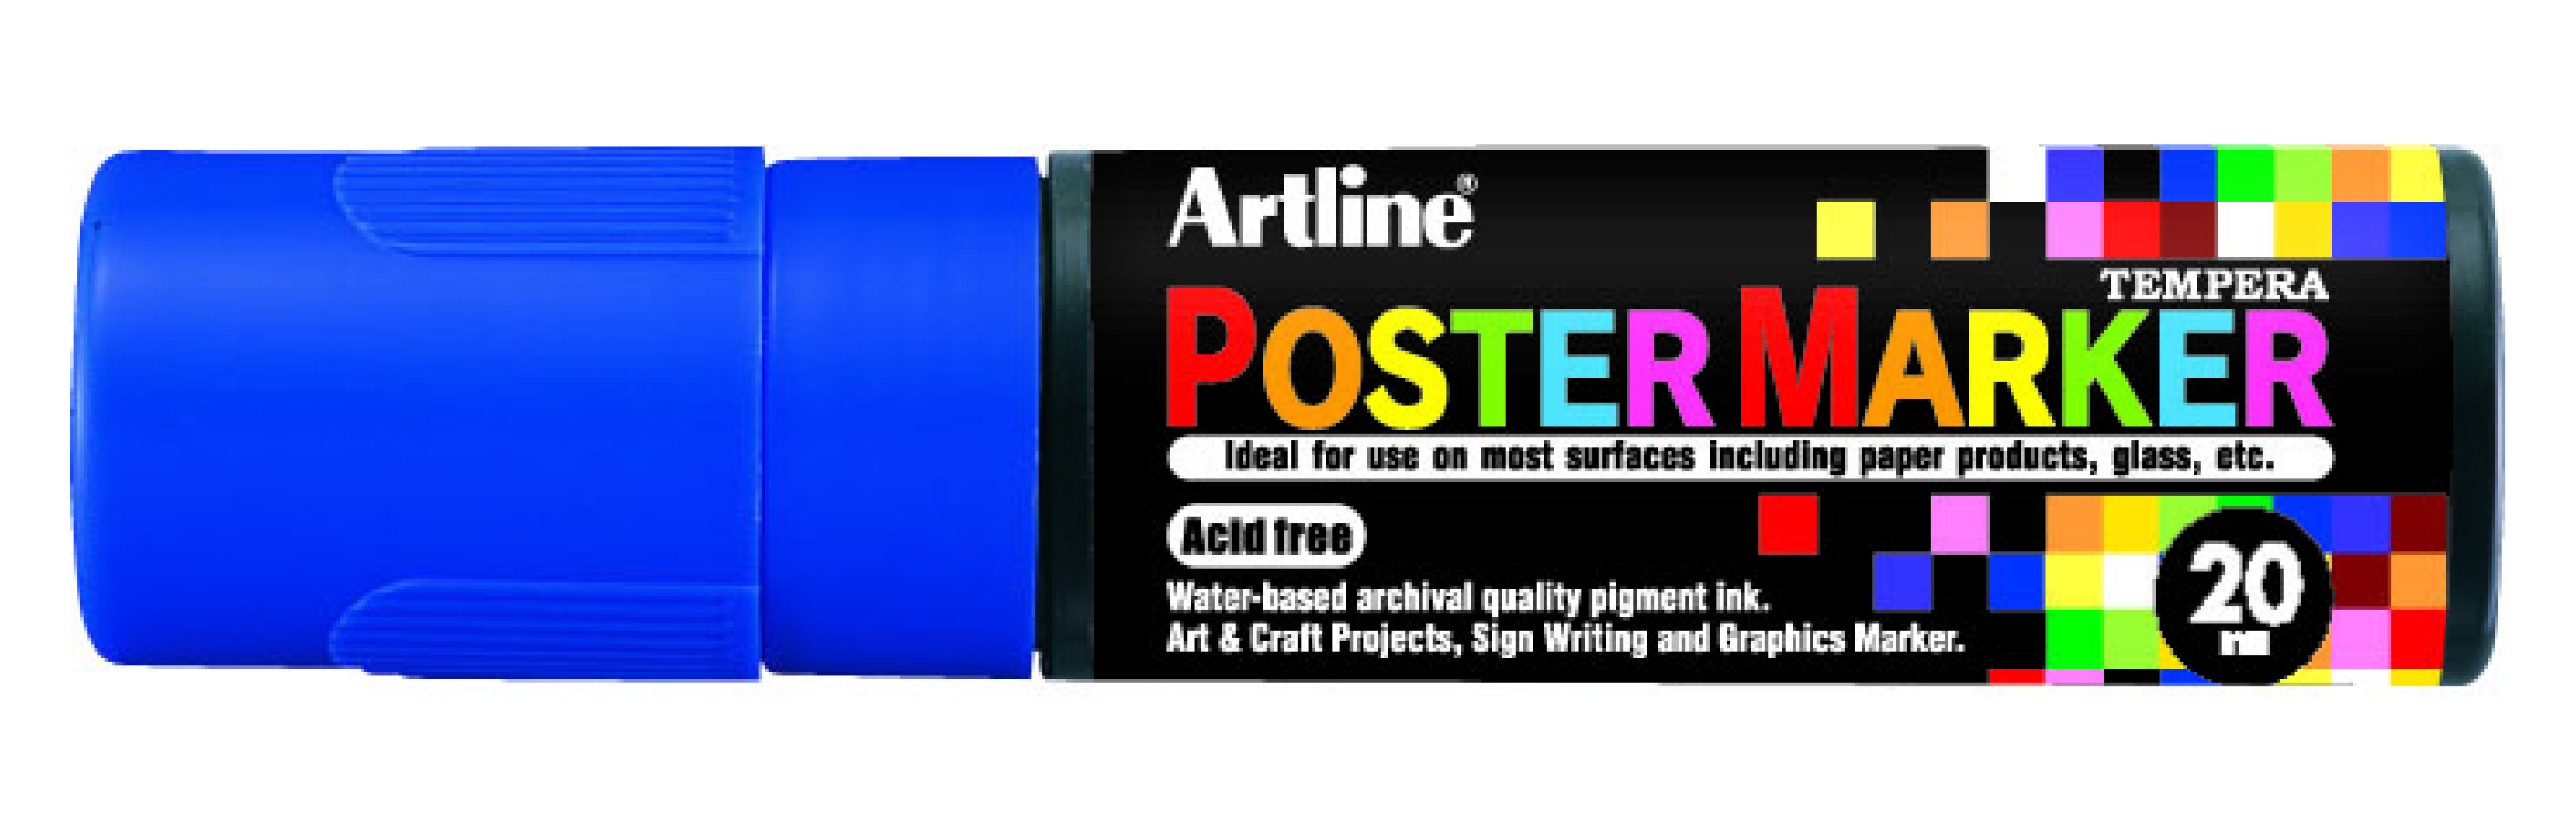 Artline EPP-20 PosterMarker 20mm merkepenn Blå